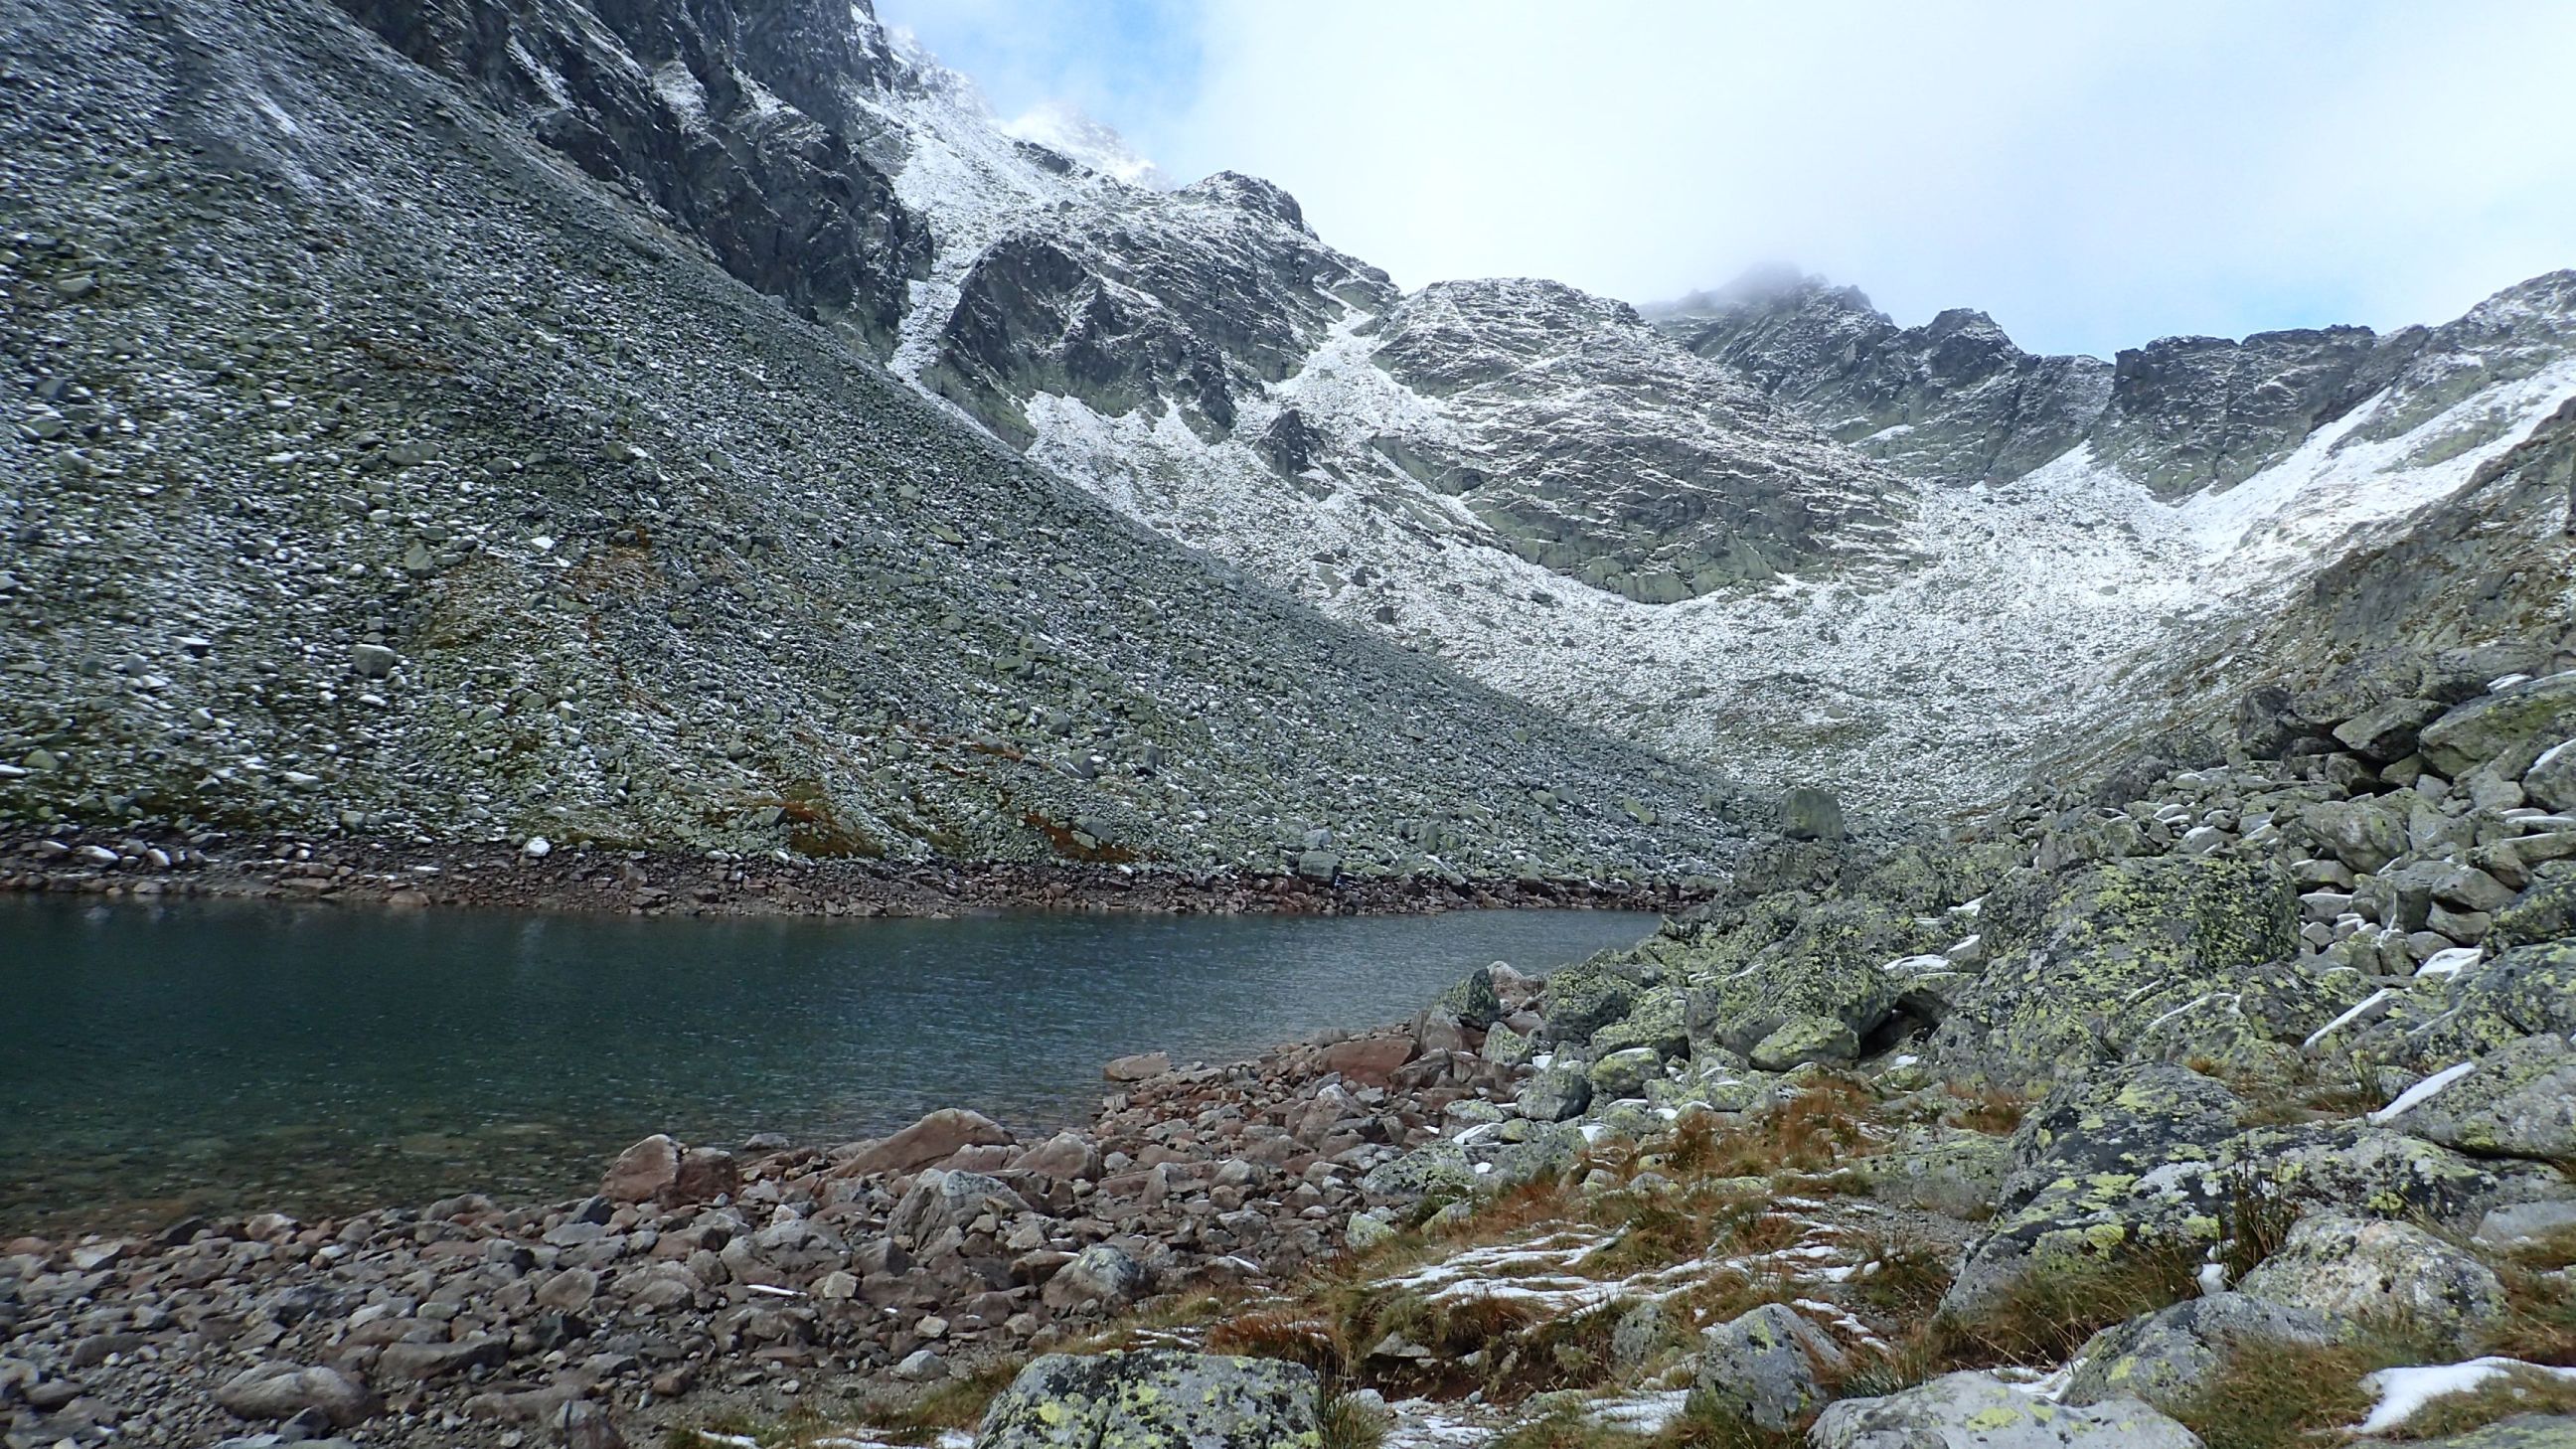 Alergare prin muntii Tatra, al doilea lac glaciar pe care l-am intalnit